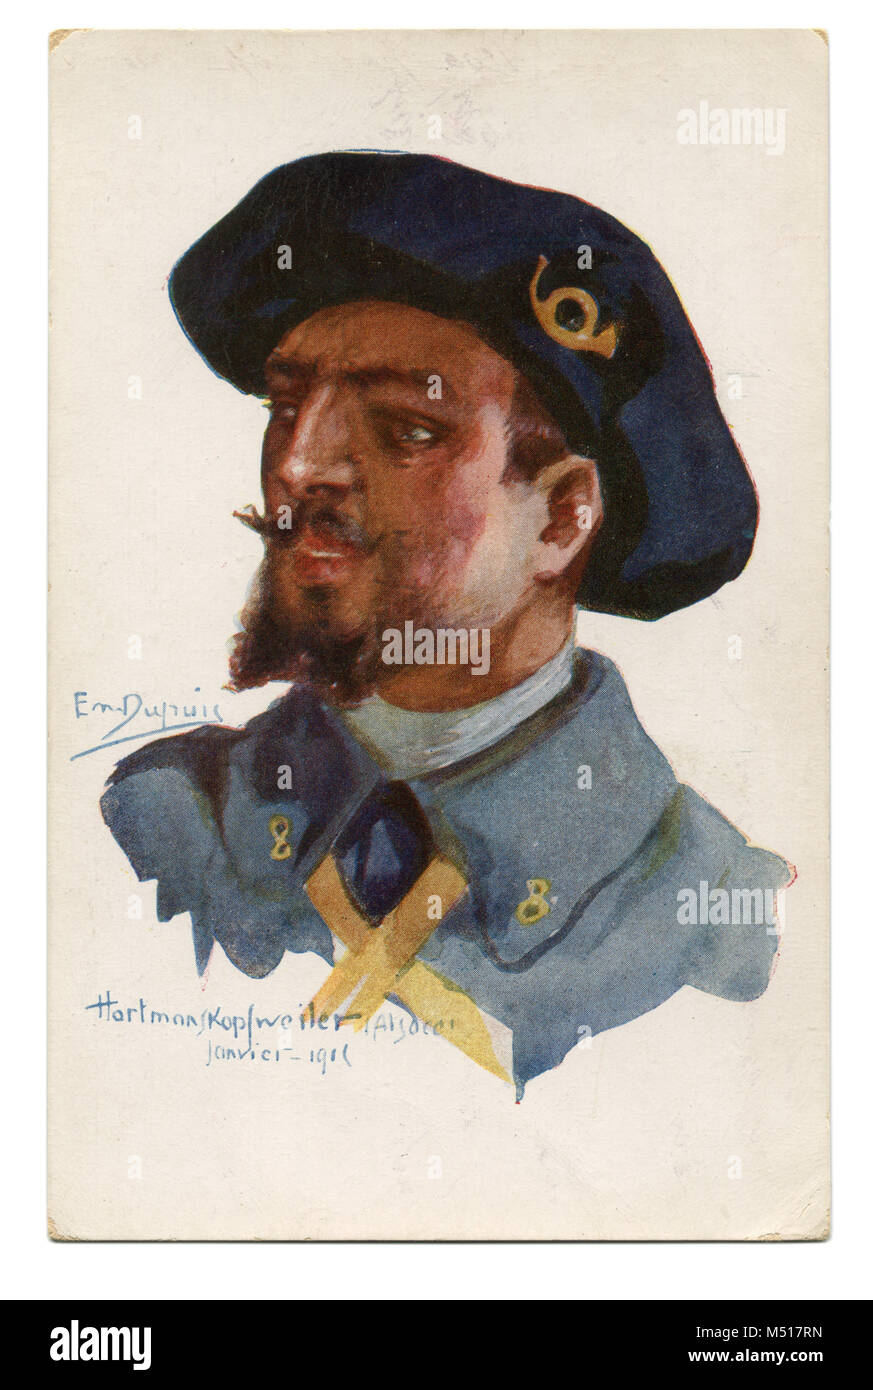 Alte französische Postkarte eine tapfere Alpine light Infanterist in blauen Barett mit einem gelben Horn - Horn Abzeichen. Der erste Weltkrieg von 1914-1918, Frankreich, Entente. Stockfoto